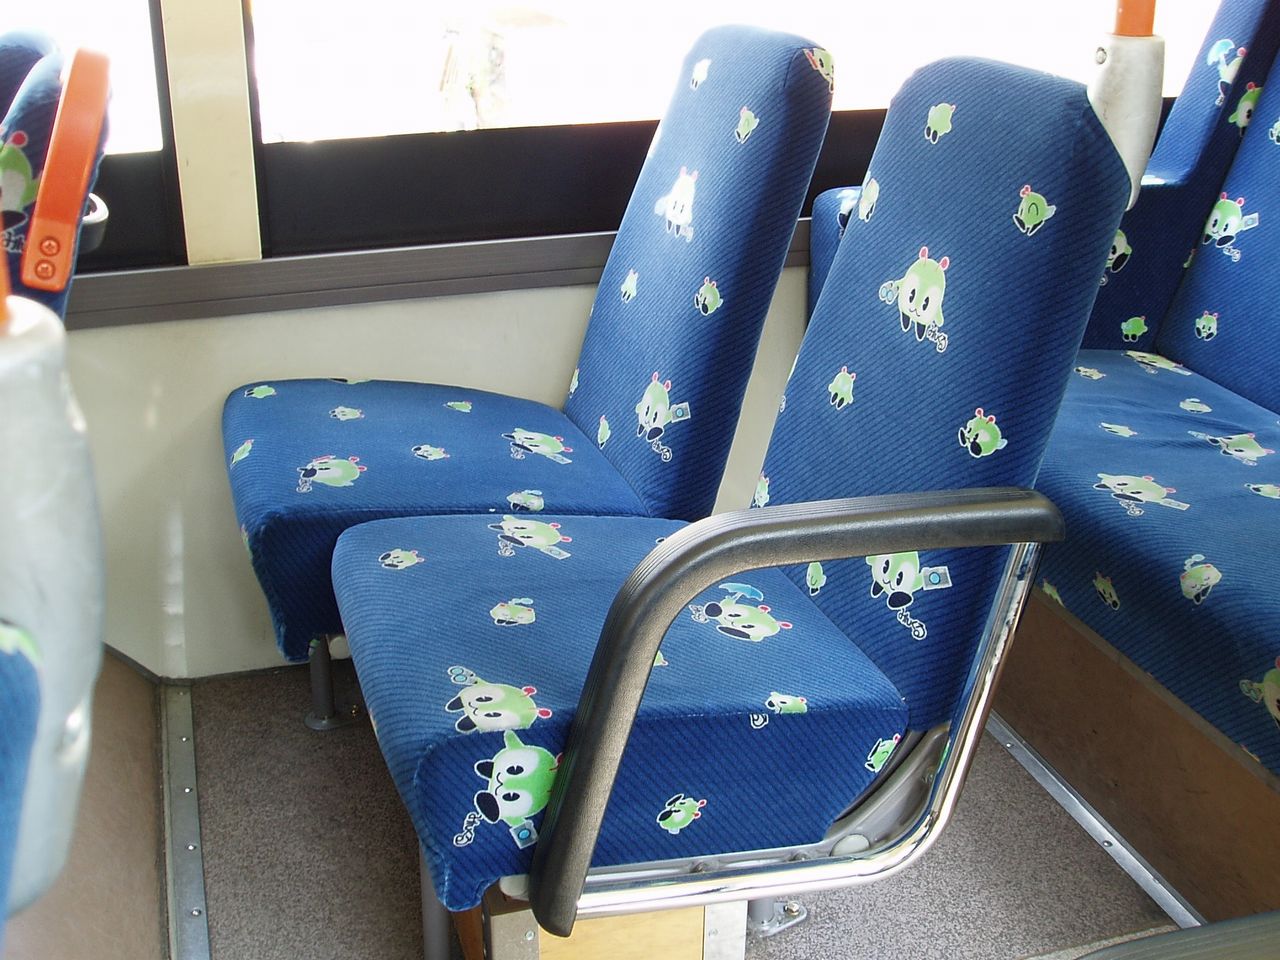 Bus seats. Комета расположение сиденье. Автобус сиденьями в виде ракушки в Японии.